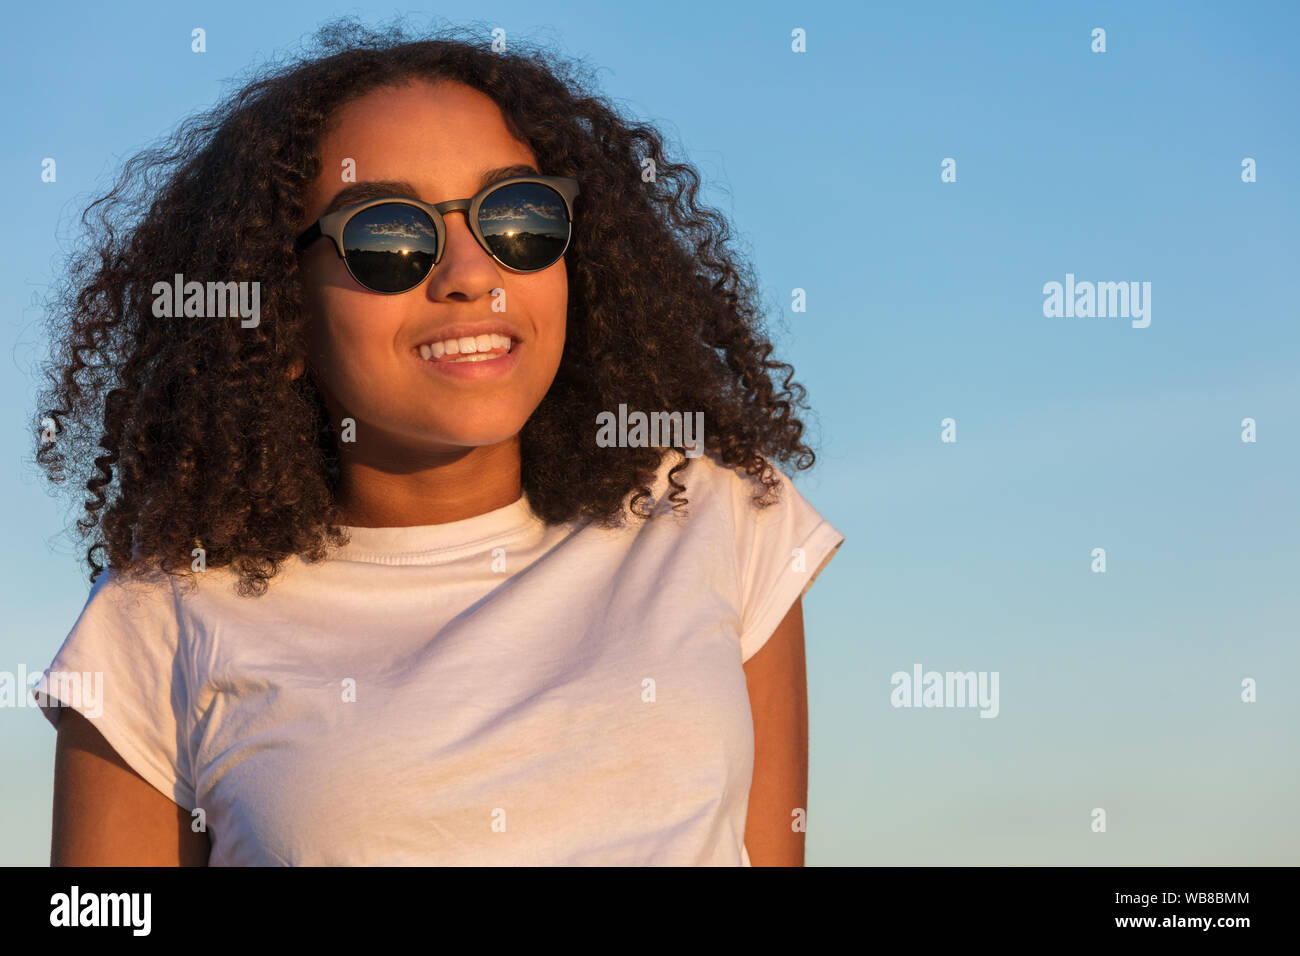 Mischlinge biracial African American Girl Teenager weibliche junge Frau mit perfekte Zähne bei Sonnenuntergang oder Sunrise Sonnenbrille tragen Stockfoto